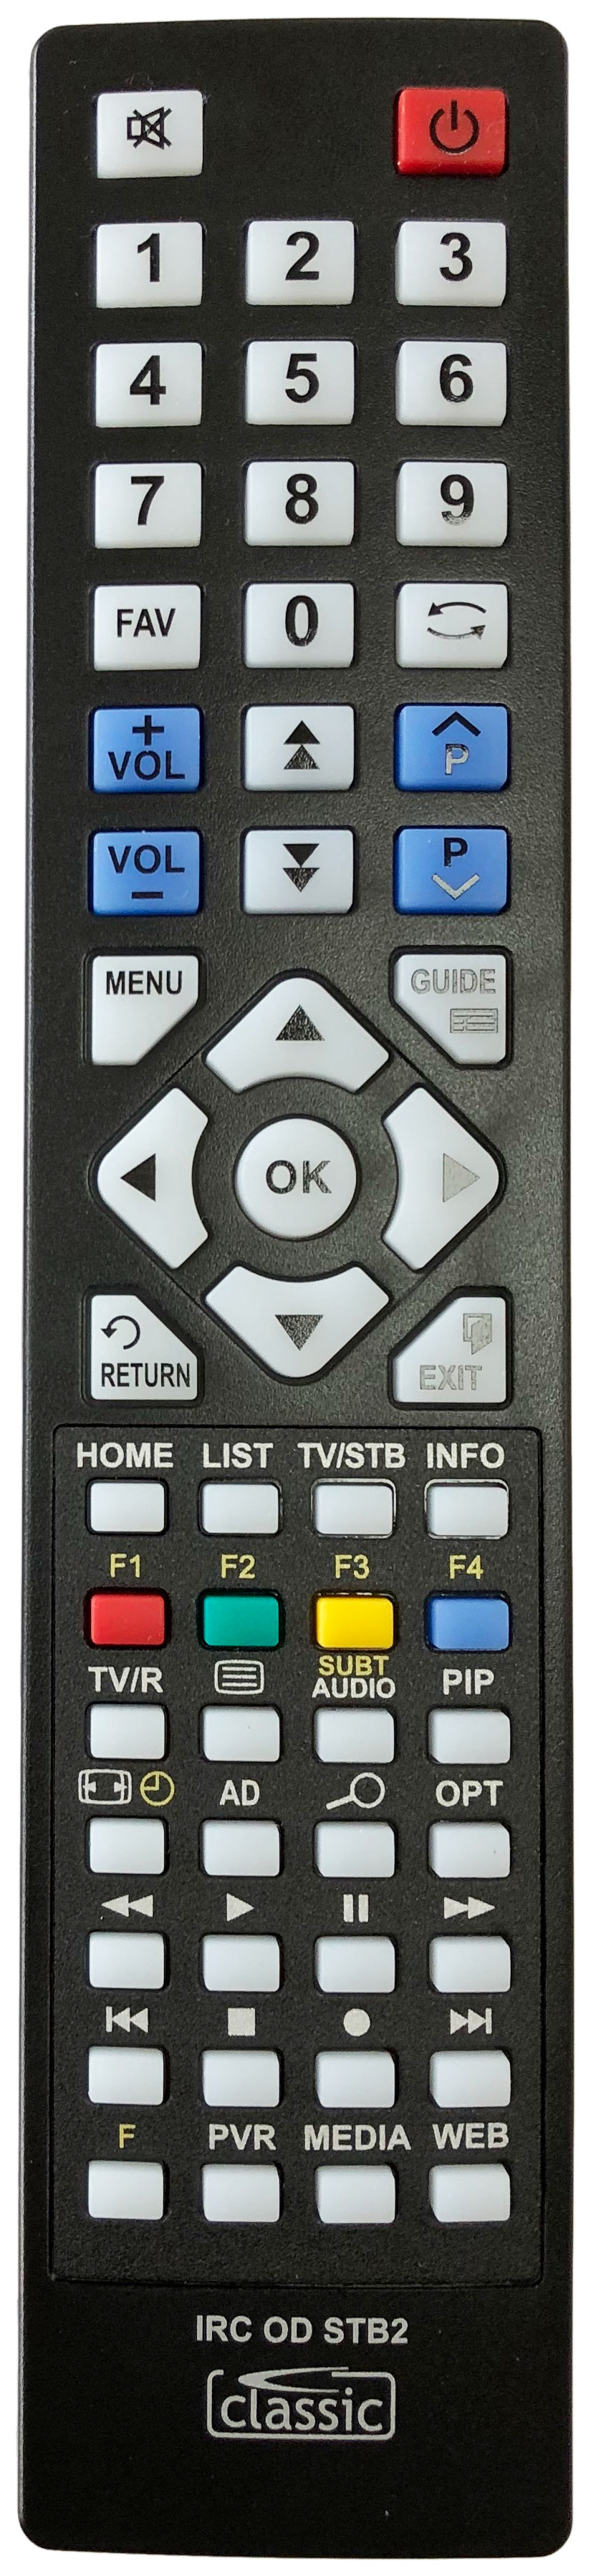 Humax 03202-00148 Remote Control